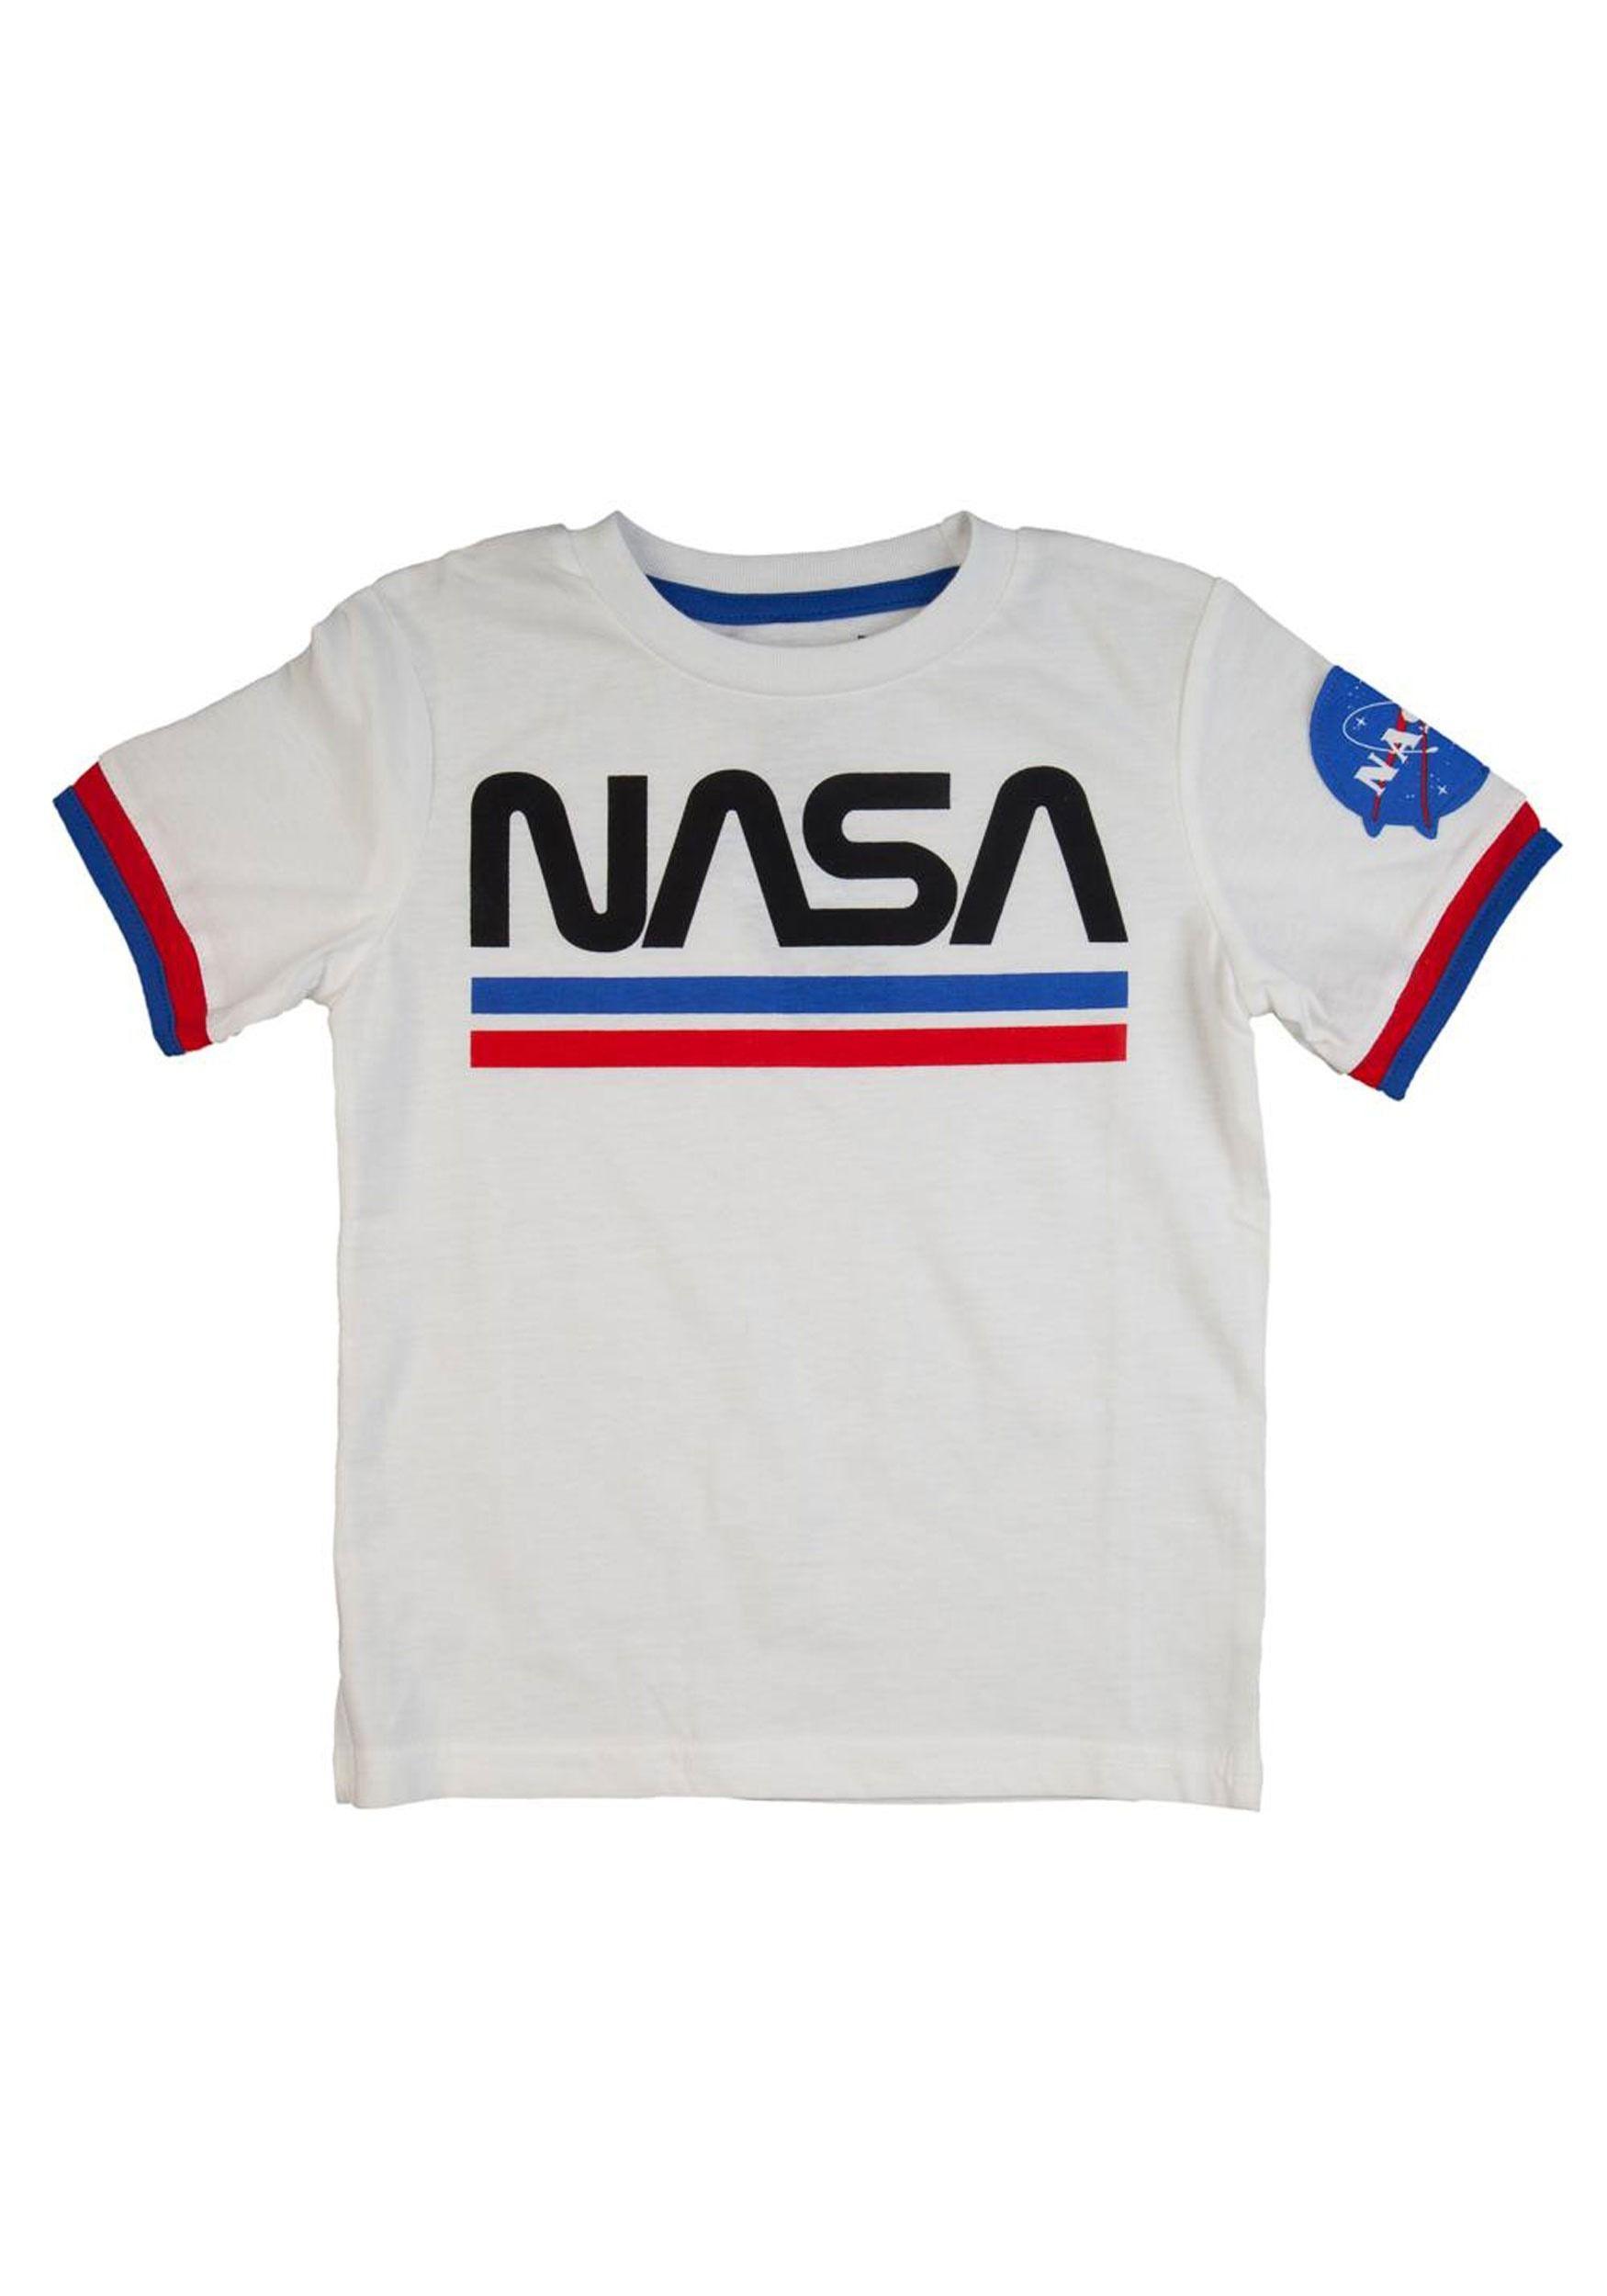 NASA Logo - NASA Logo Toddler Tee